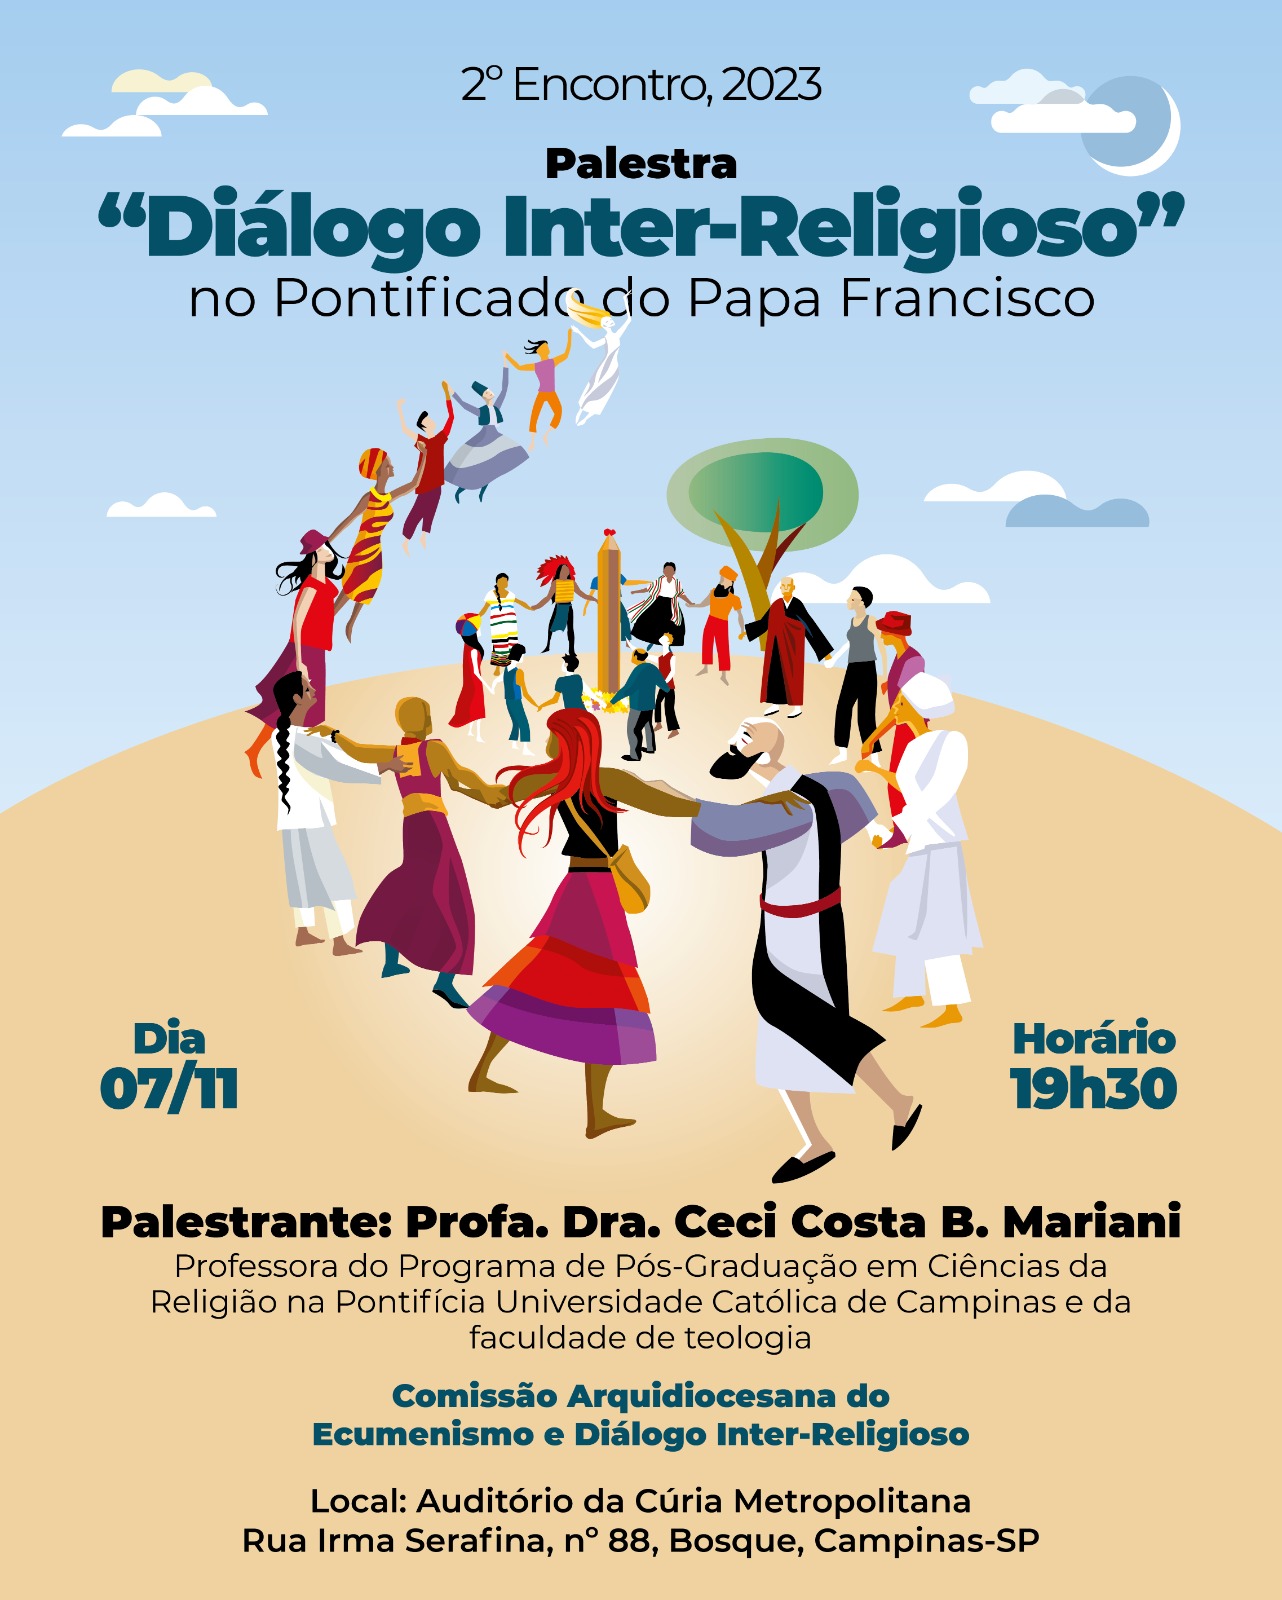 CICLO DO DIÁLOGO INTER-RELIGIOSO - Palestras das 18h às 19h30